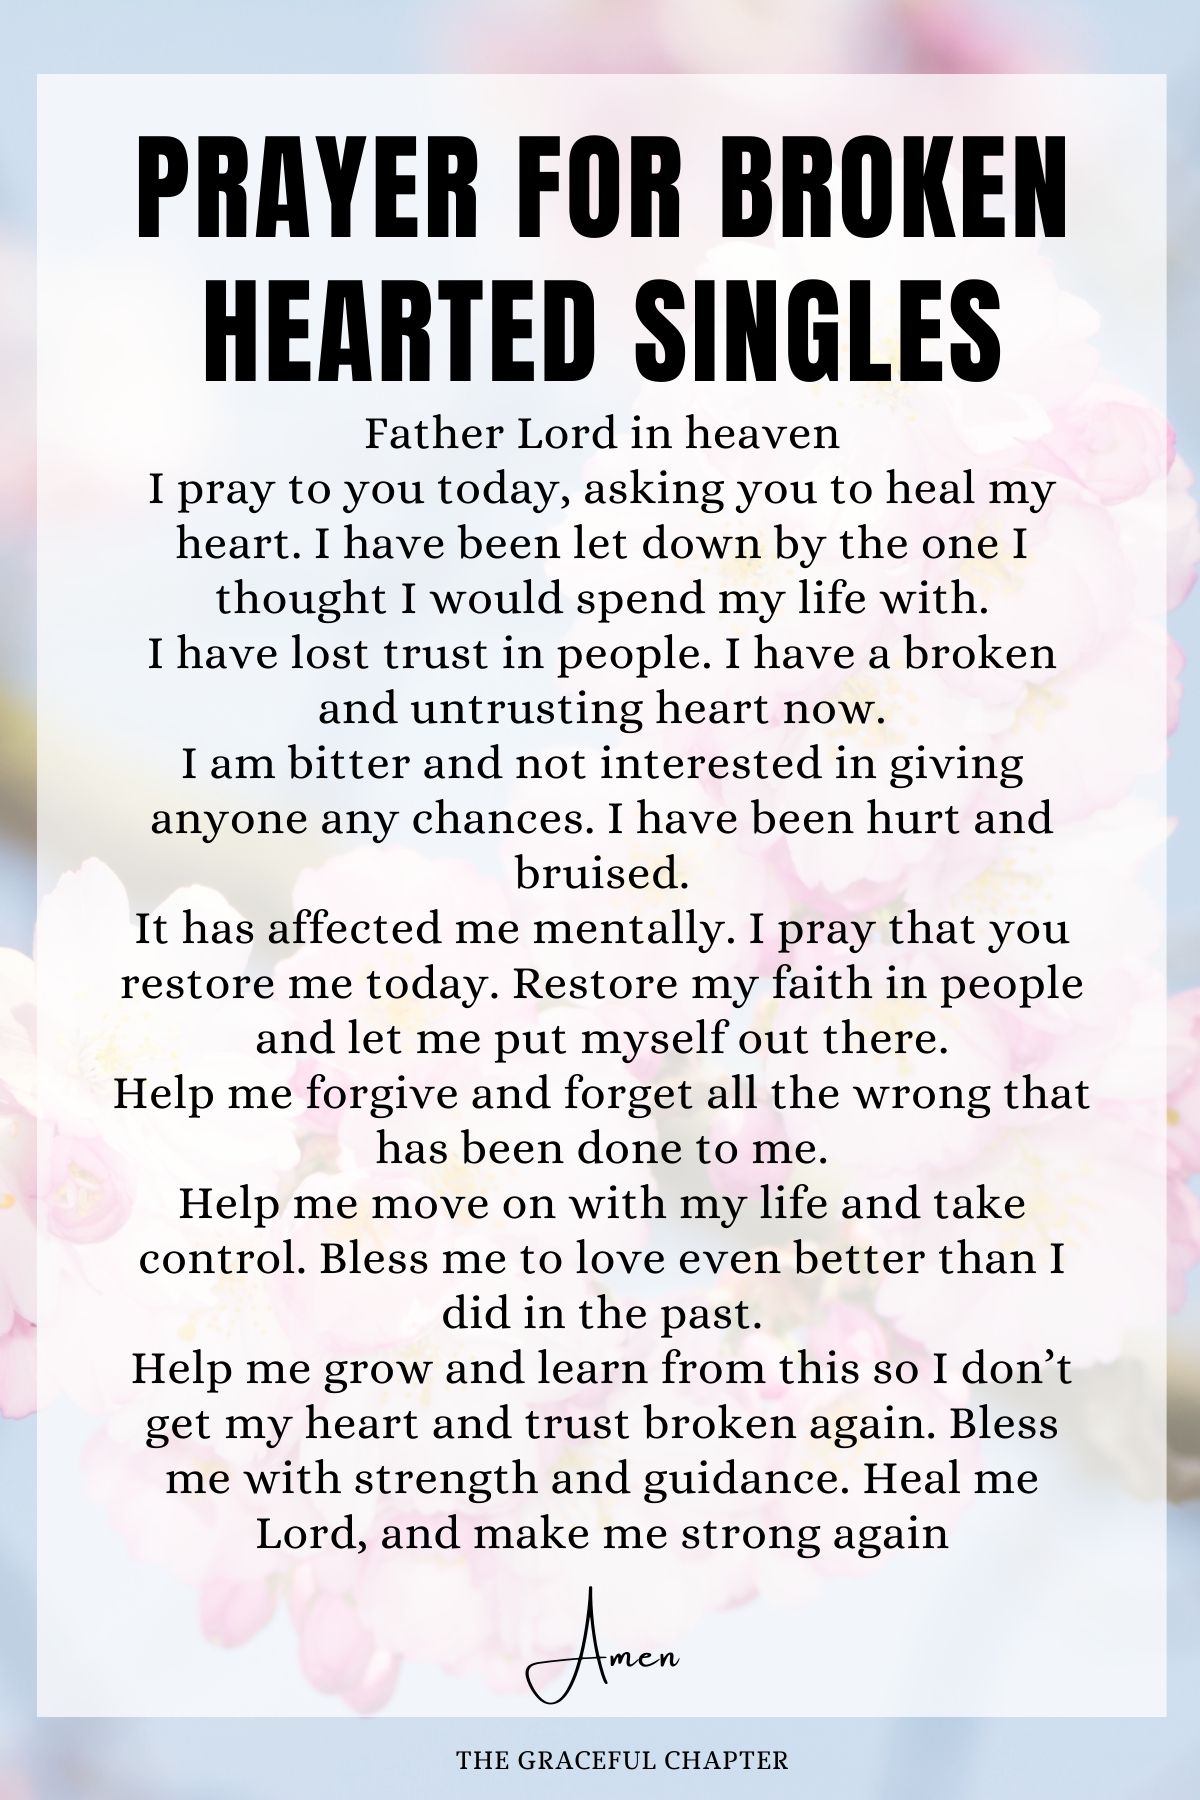 Prayer for Broken Hearted Singles